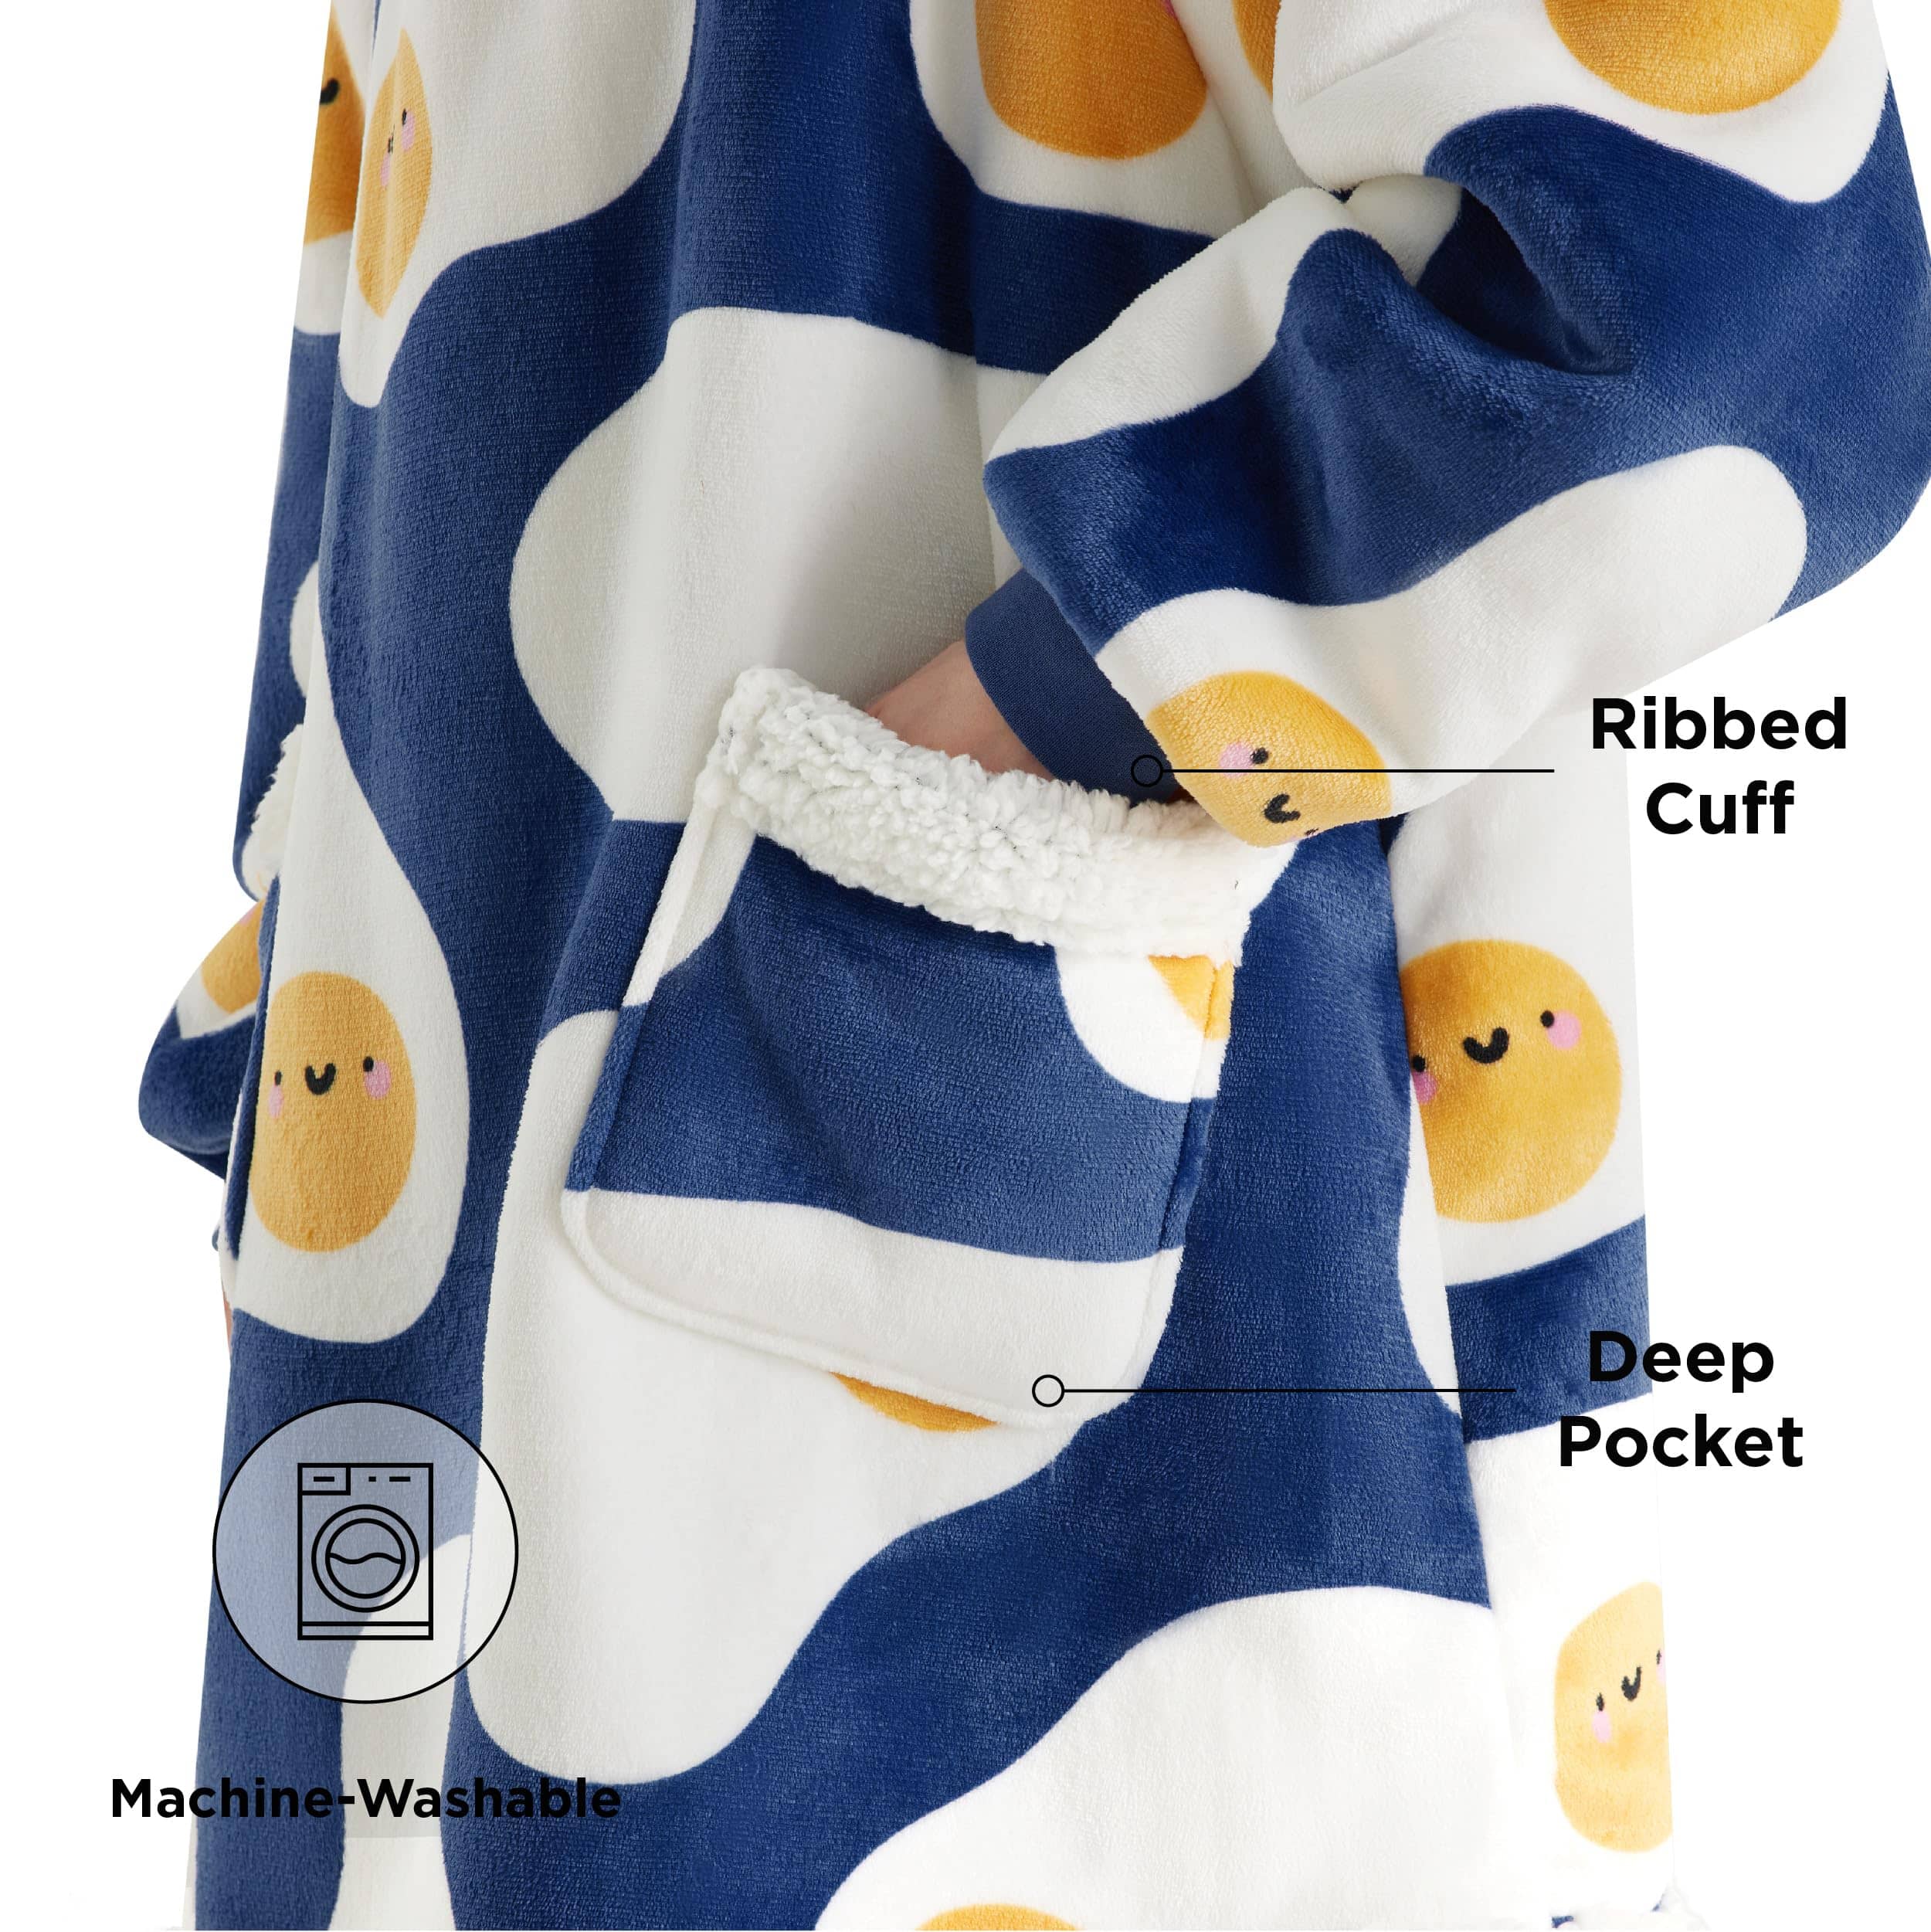 Sherpa Fleece Printed Short Wearable Blanket Hoodie